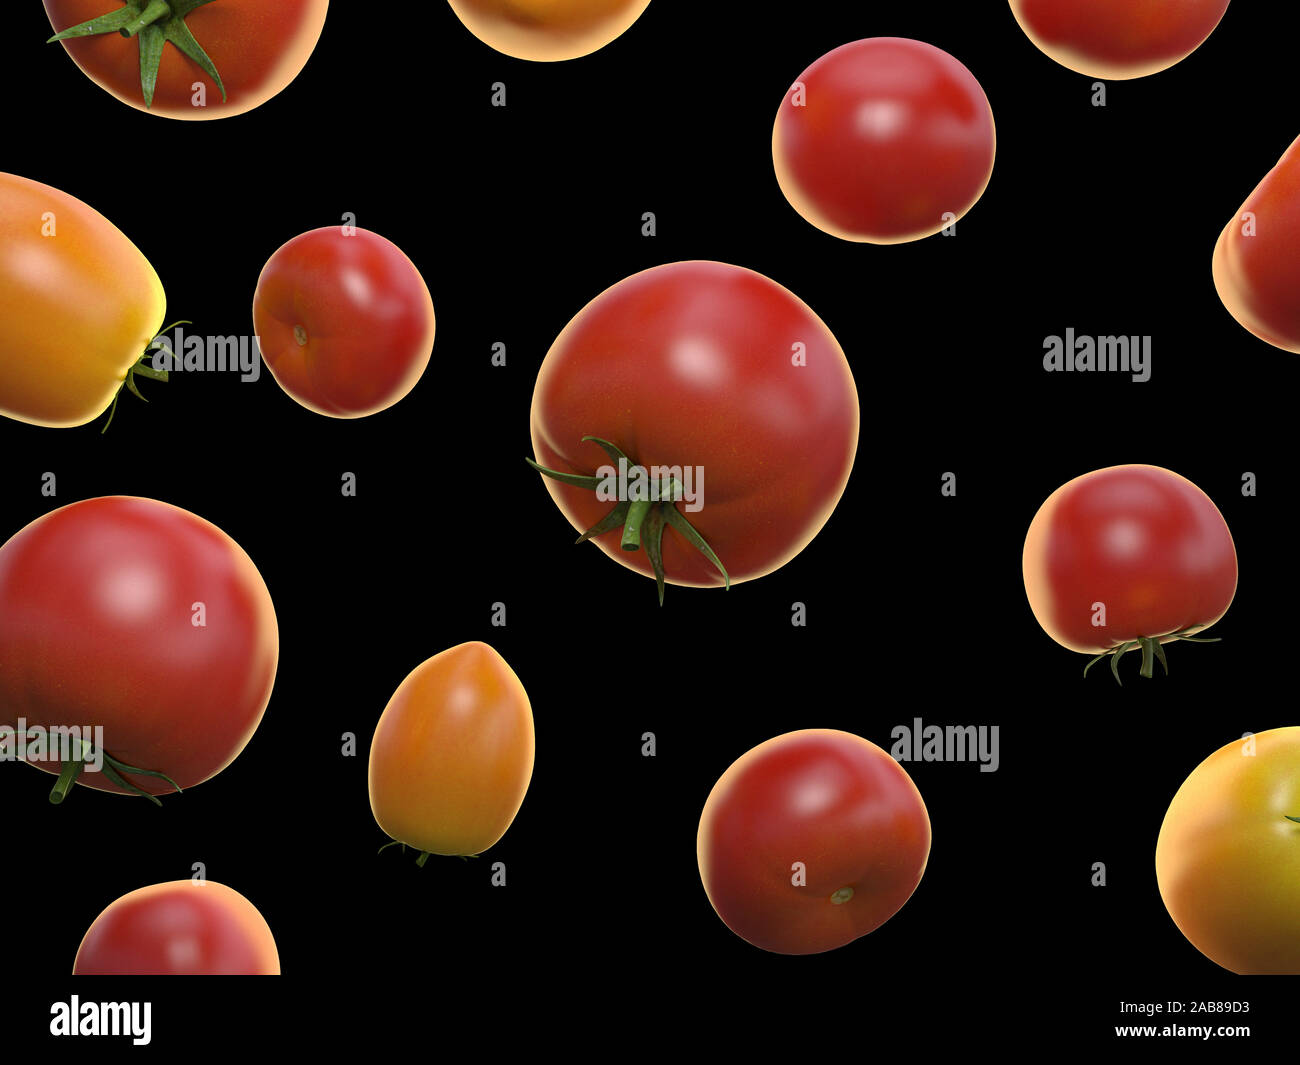 La nourriture en rendu 3d illustration de tomates Banque D'Images